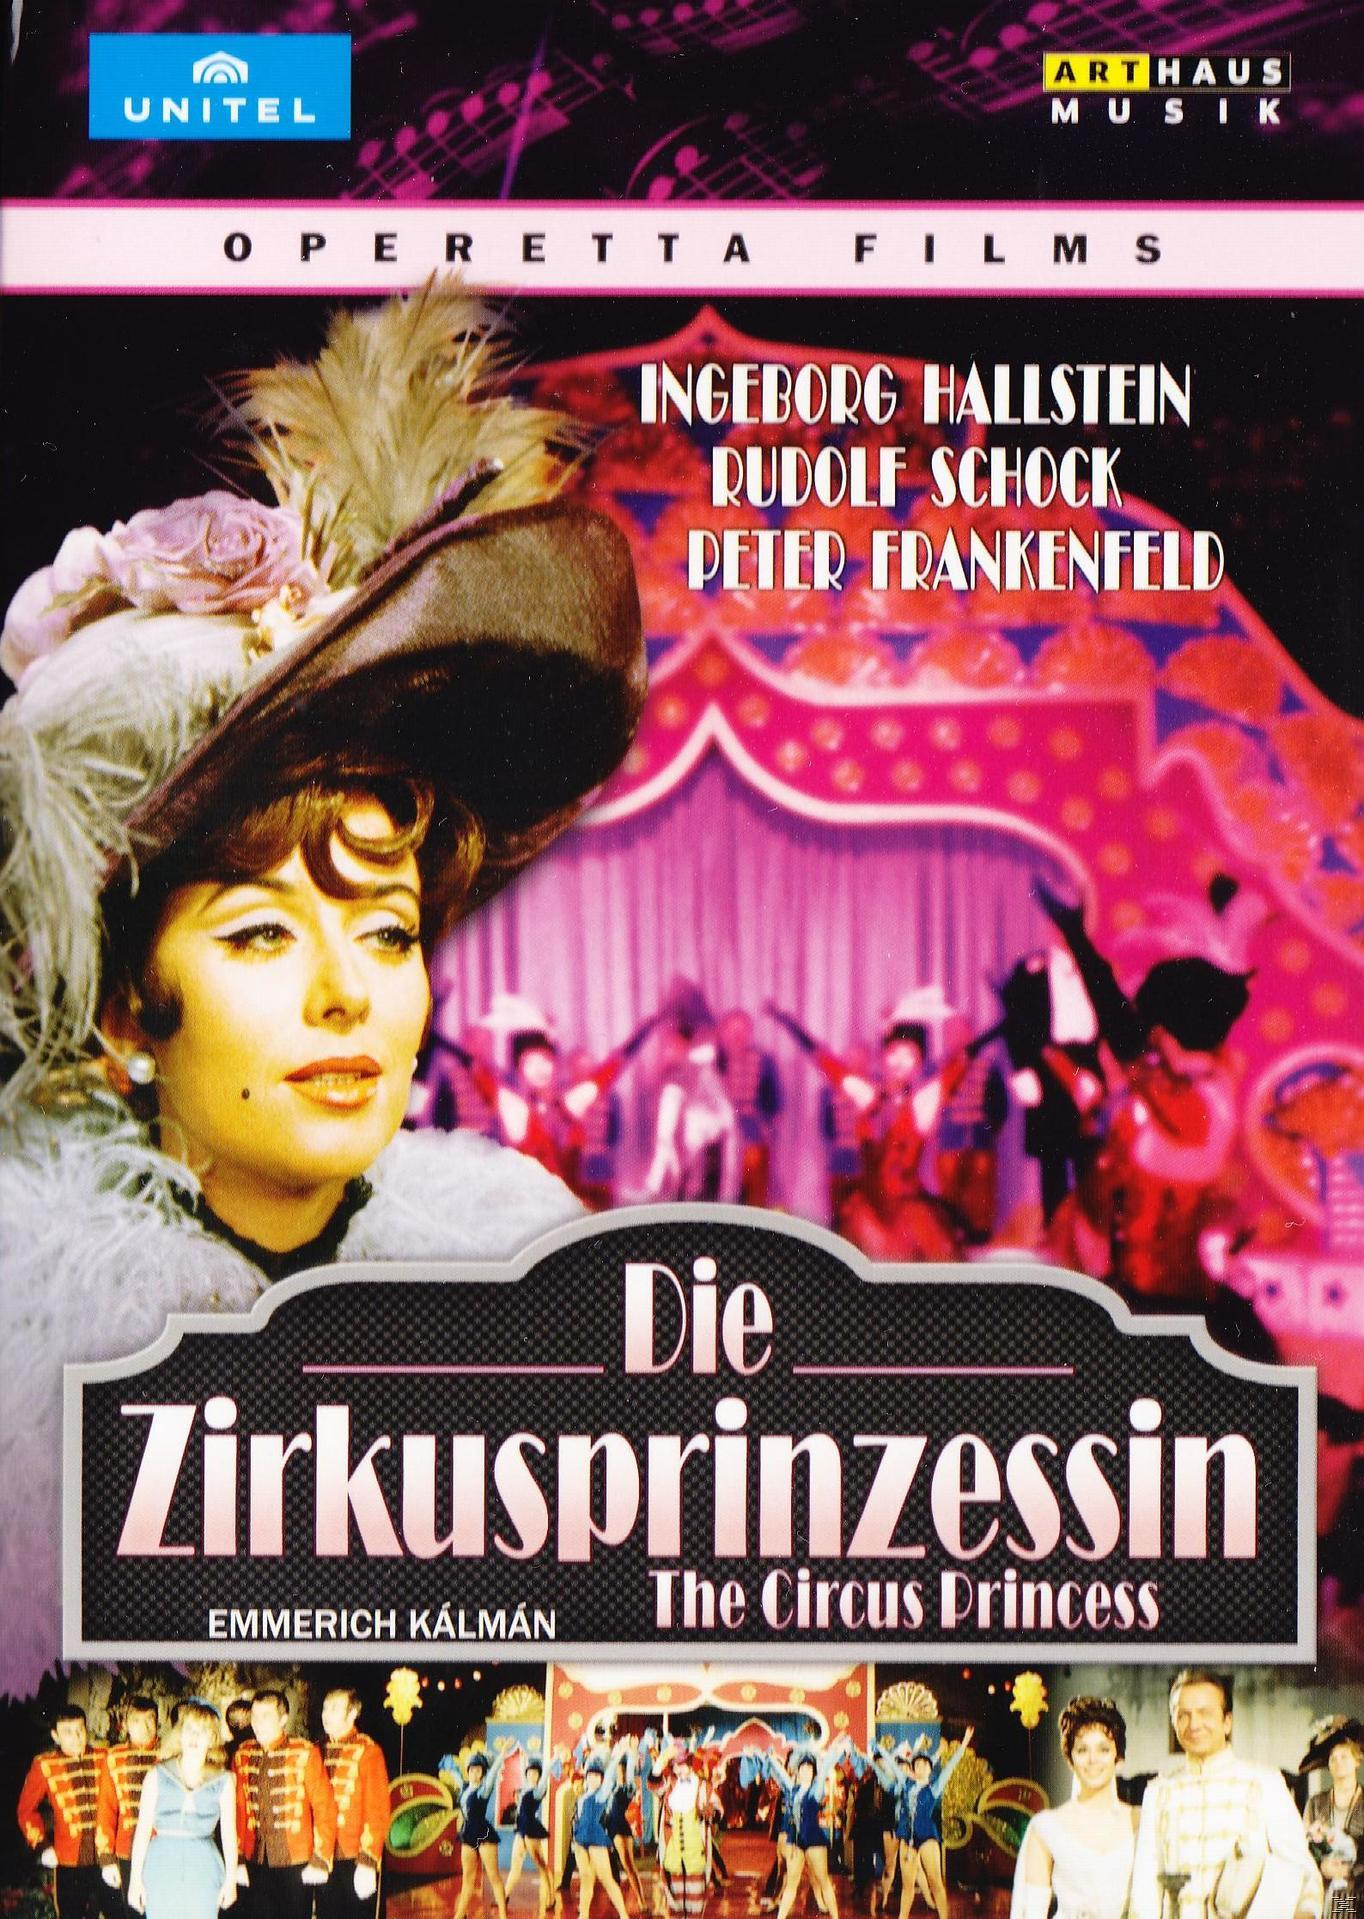 Rudolf Ingeborg Hallenstein, (DVD) Die Schock - Zirkusprinzessin -